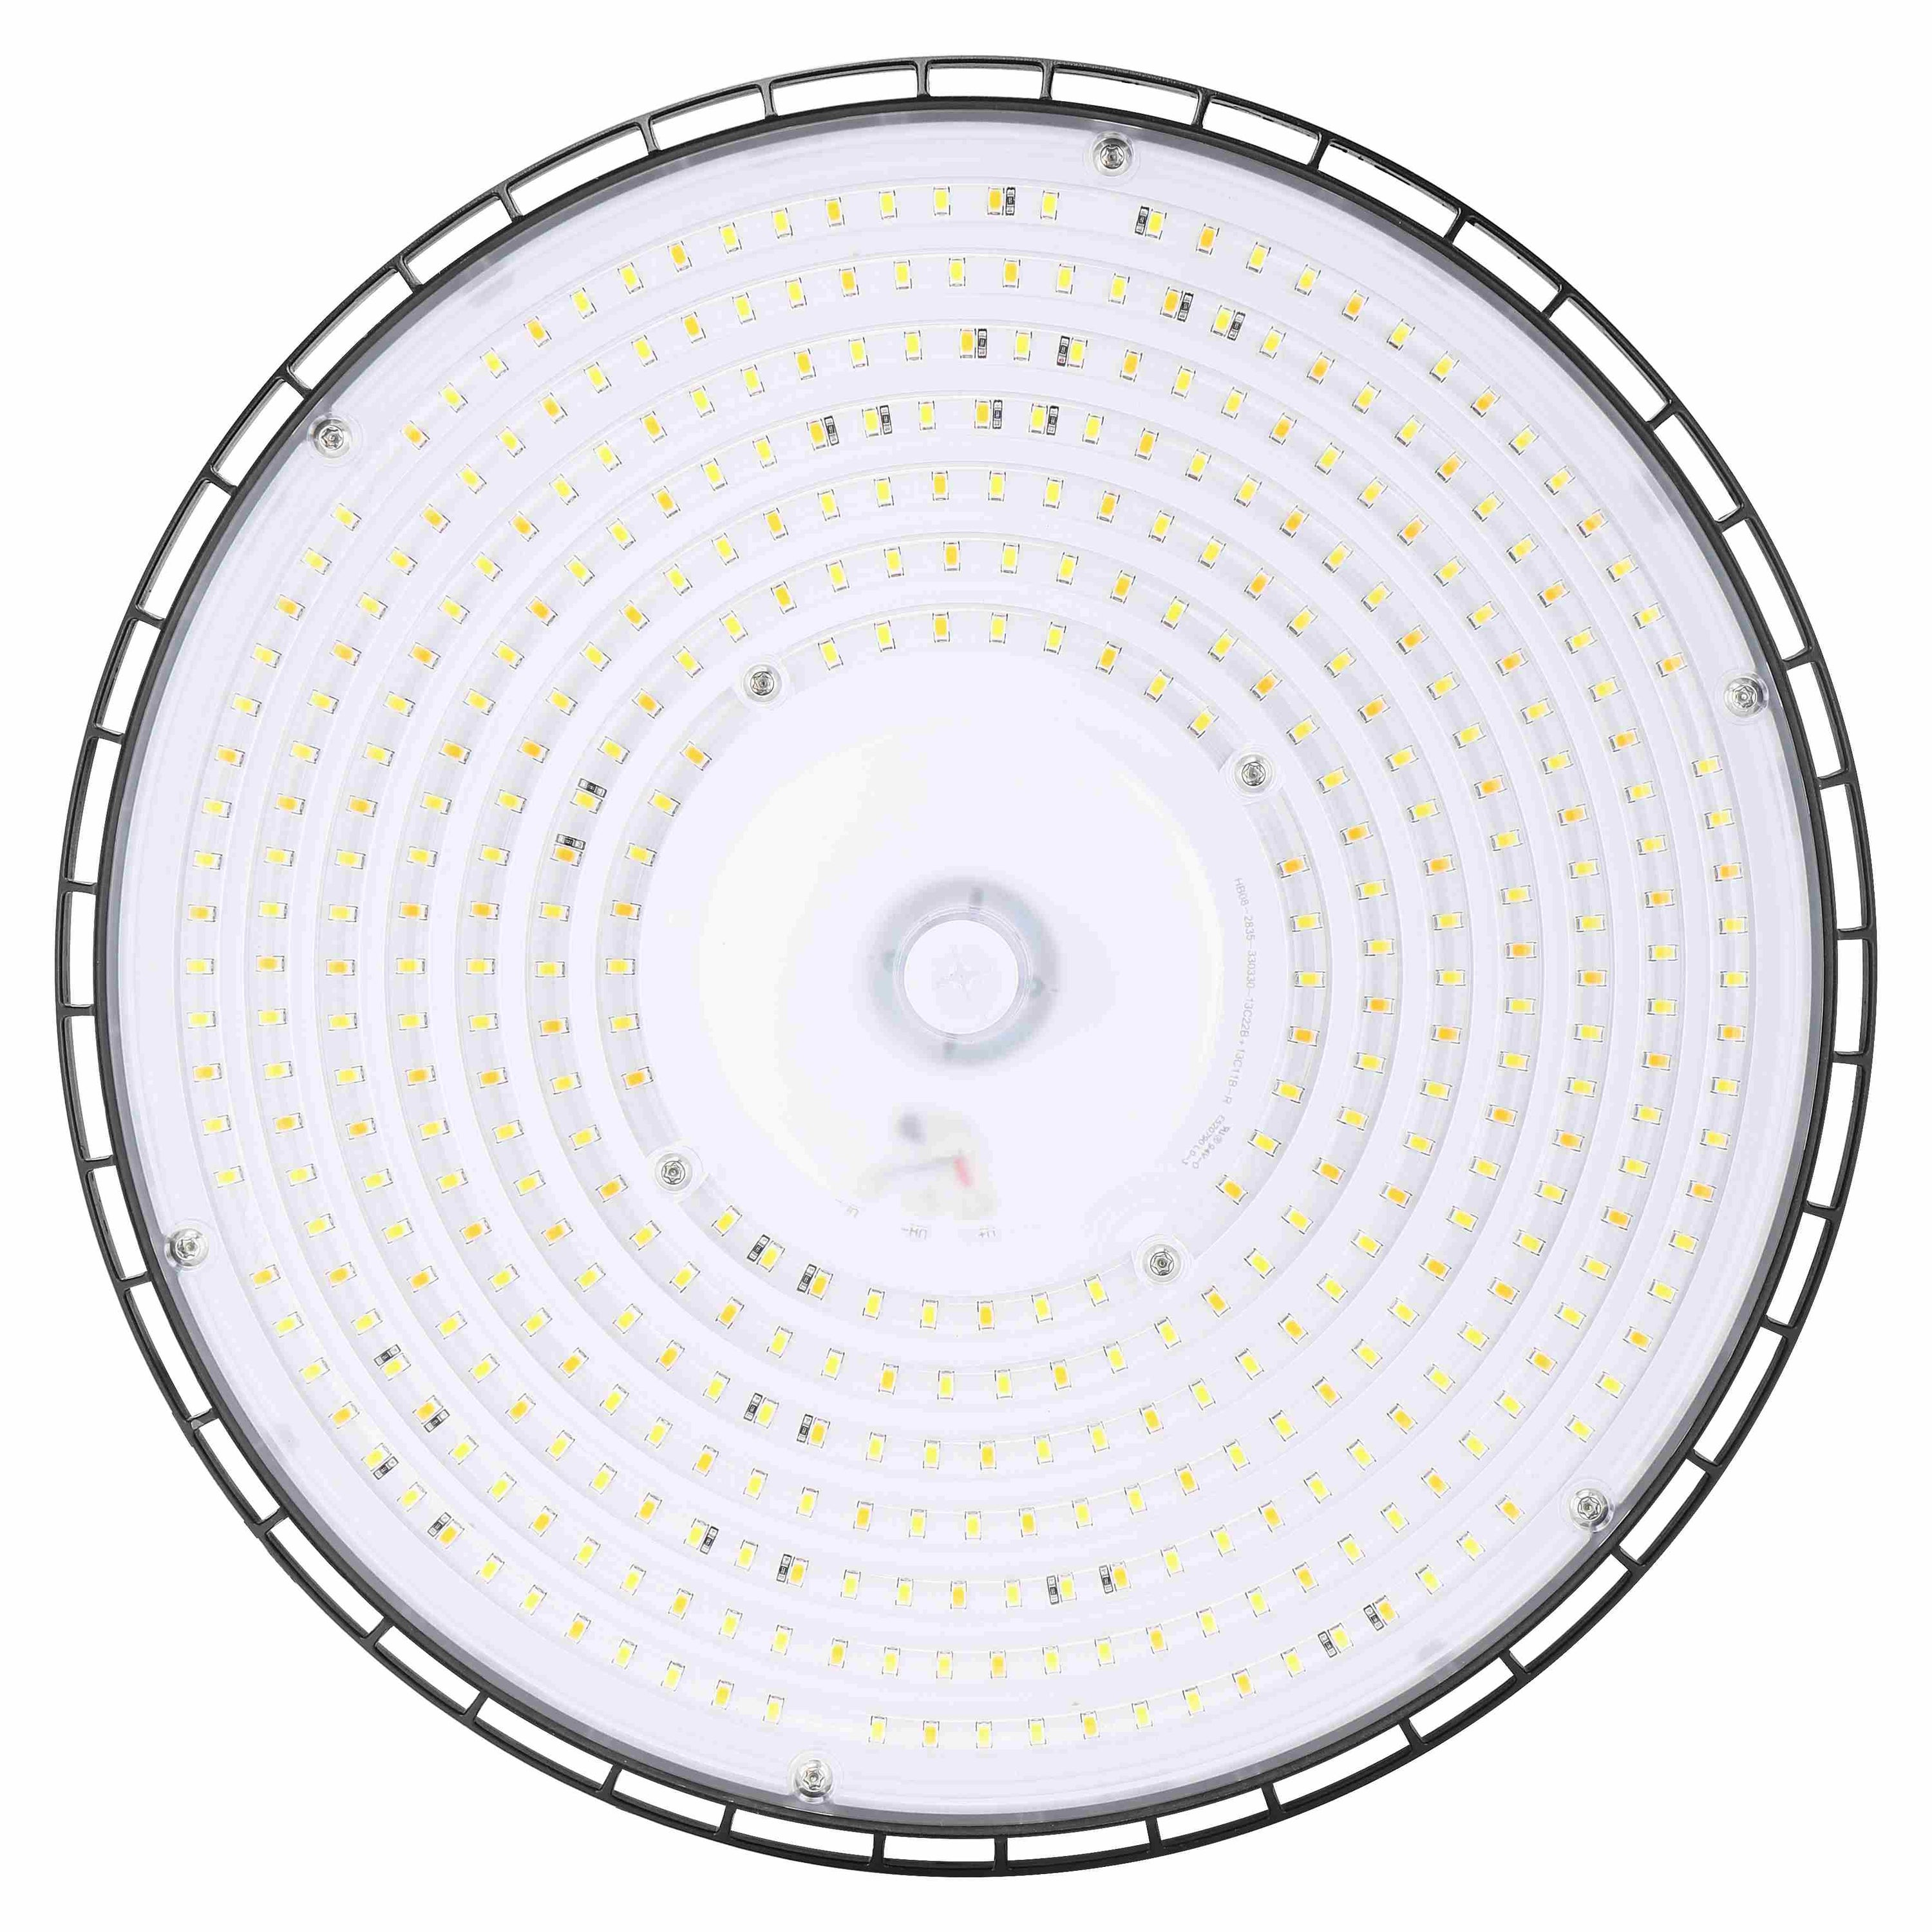 MHB08 LED Round UFO High Bay Light Fixture 100W/150W/160W, 16000 Lumens, 3000K/4000K/5000K